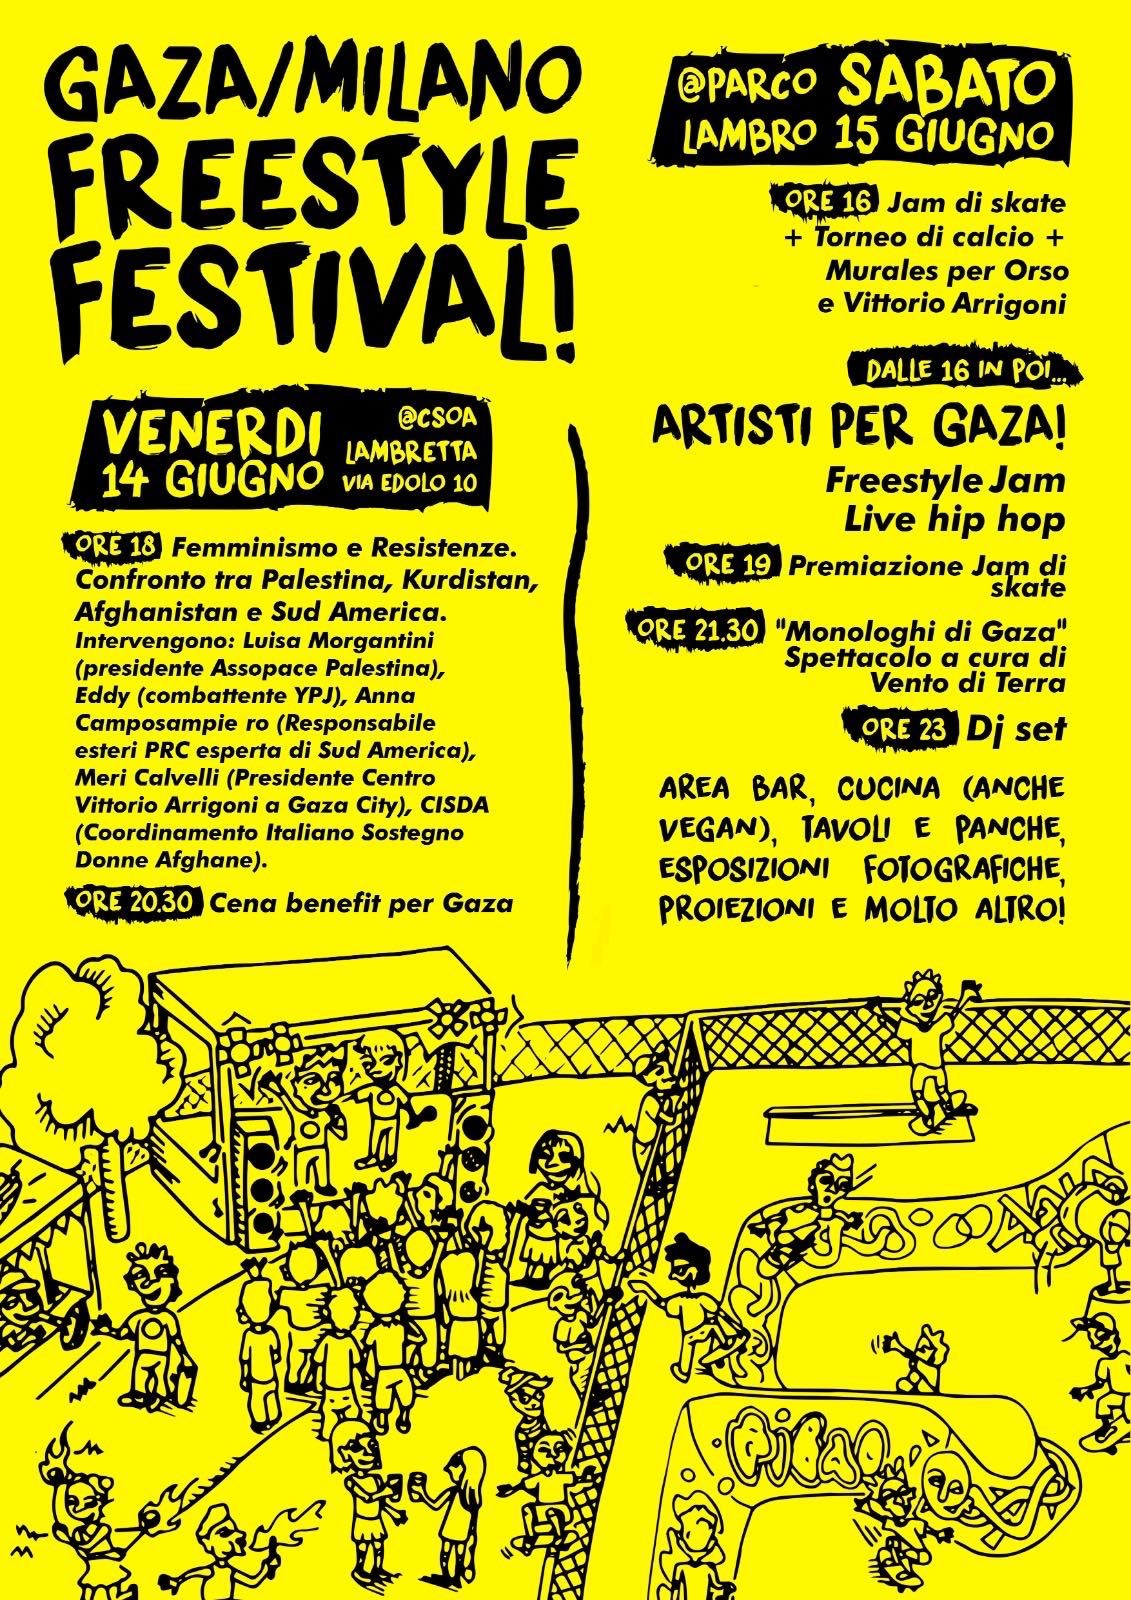 Milano, 14 e 15 giugno: Gaza-Milano Freestyle Festival.